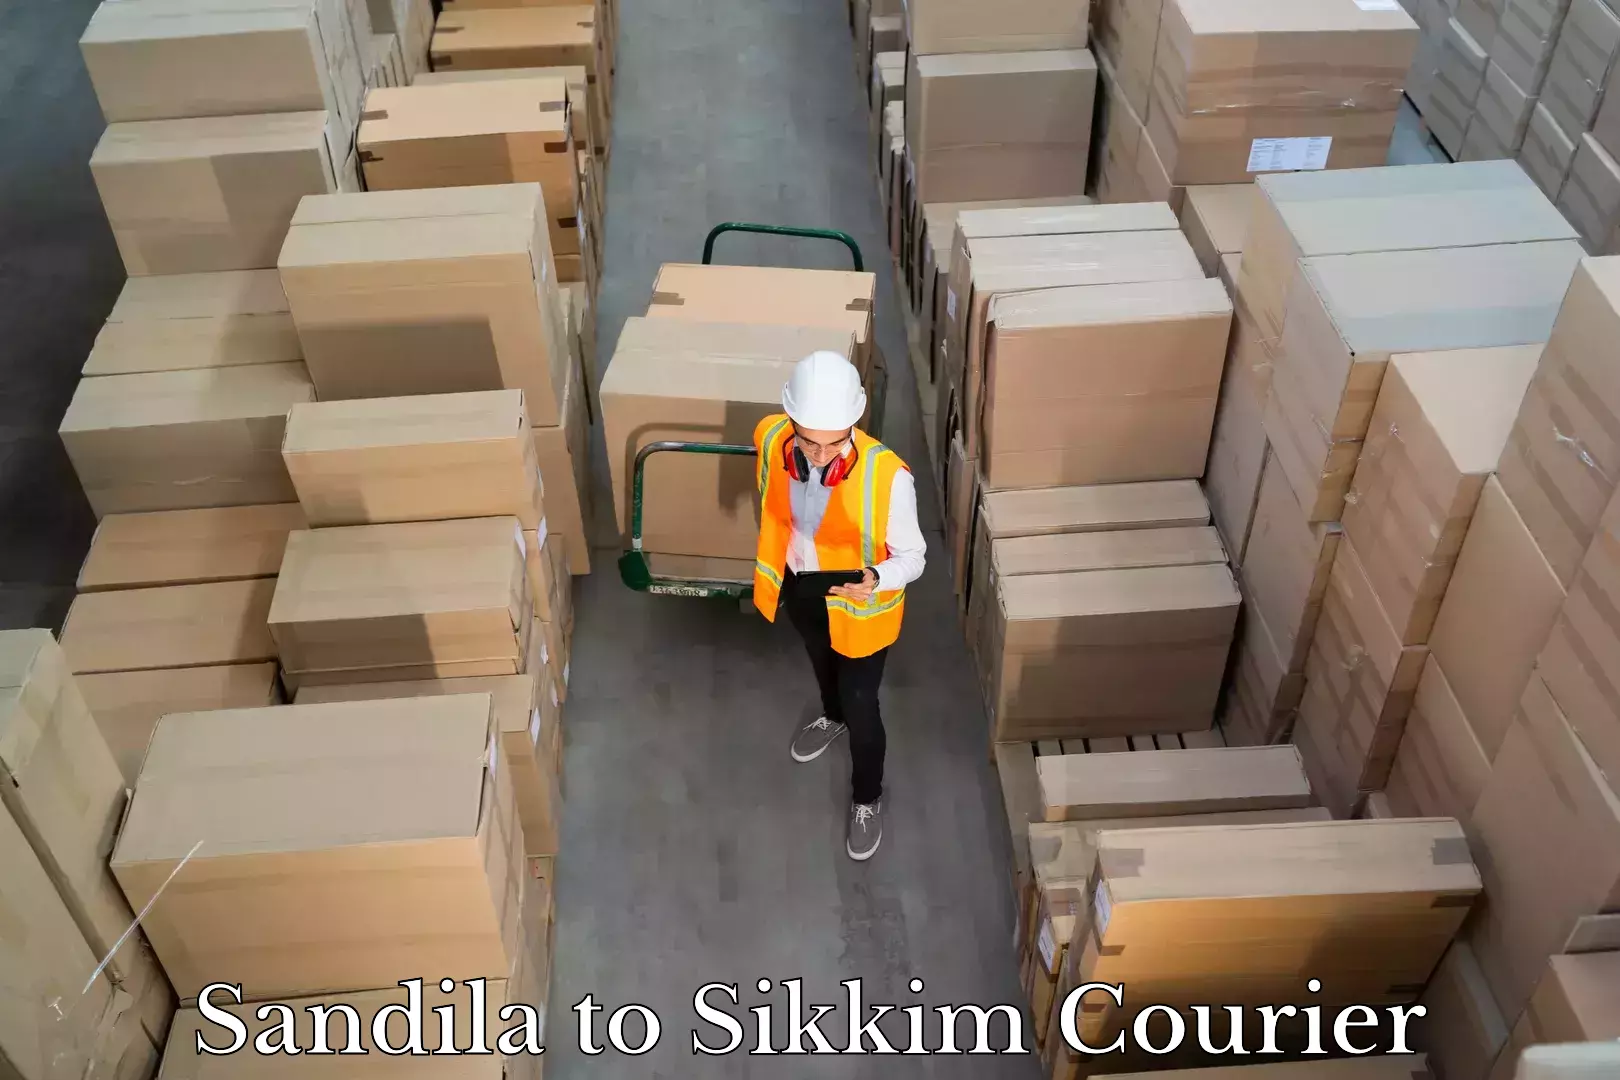 Luggage dispatch service Sandila to West Sikkim